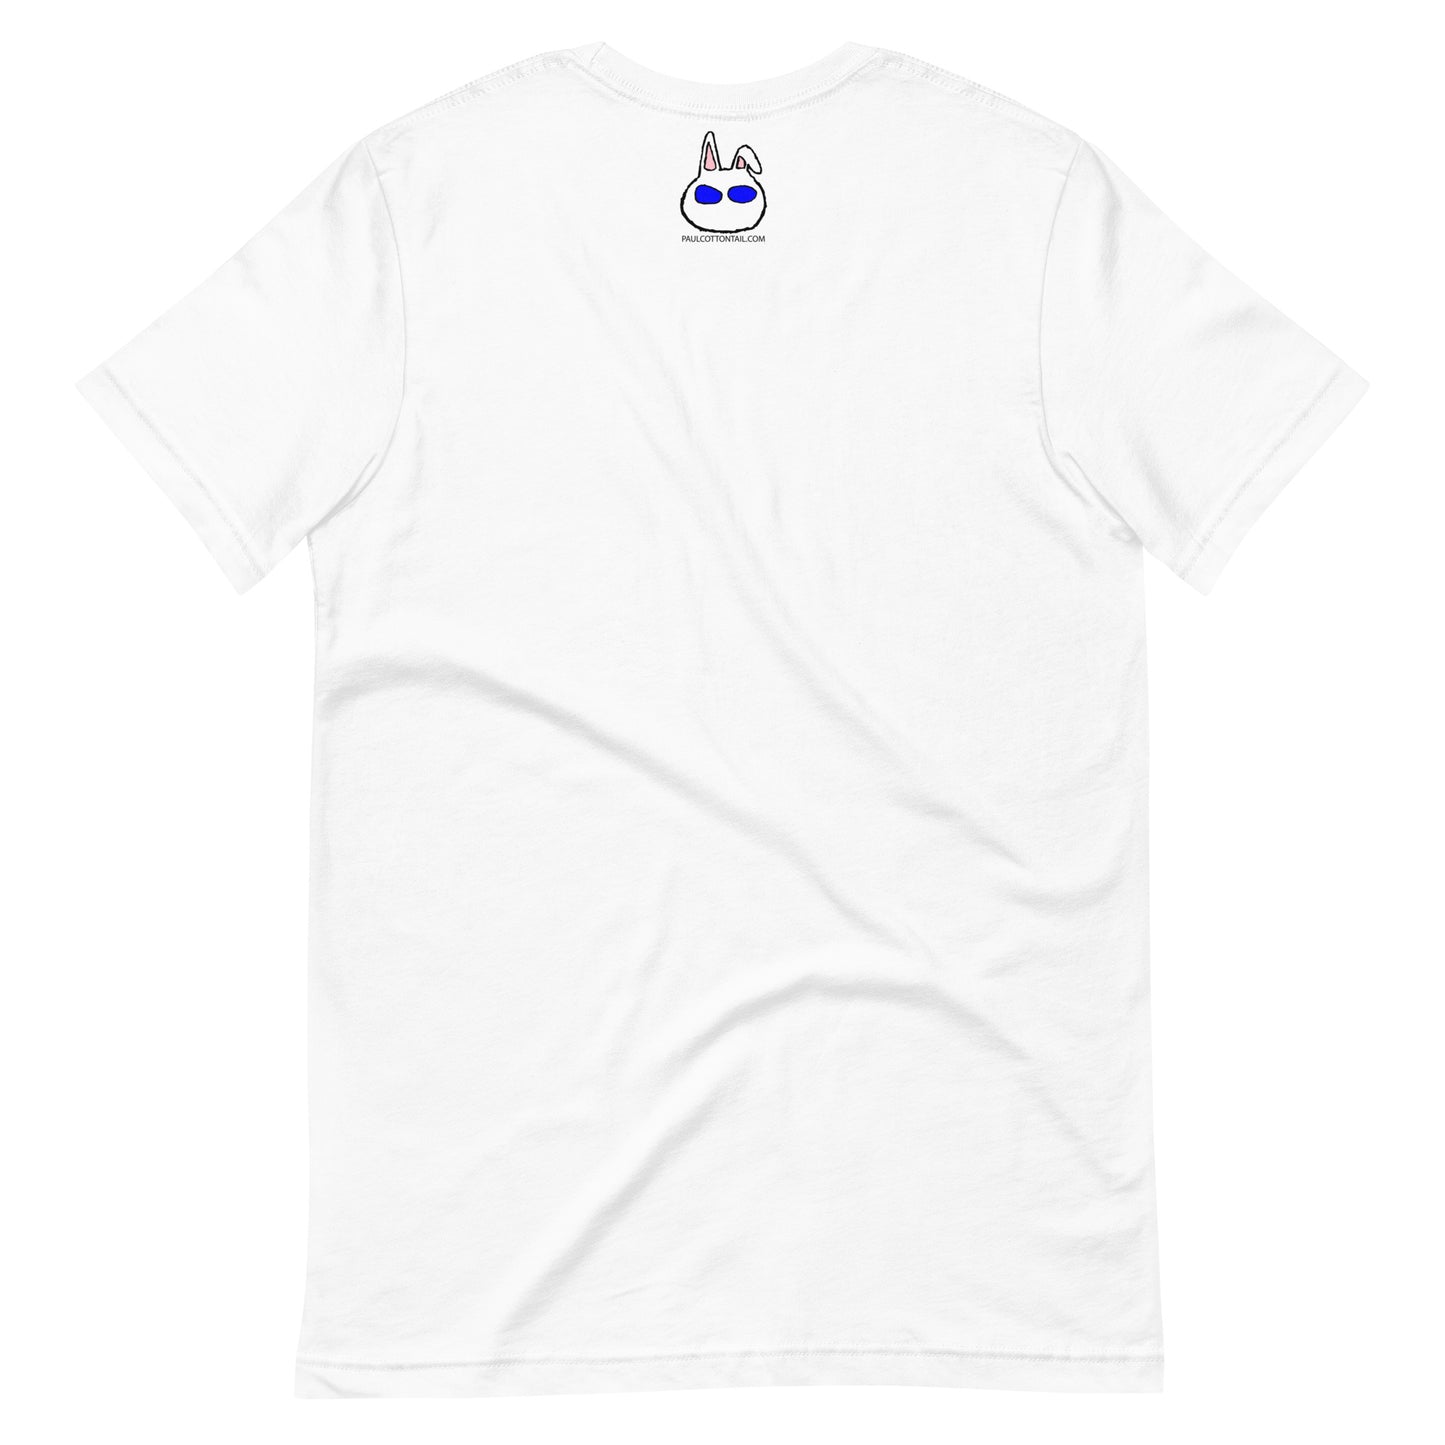 Don't be an ass. Unisex t-shirt